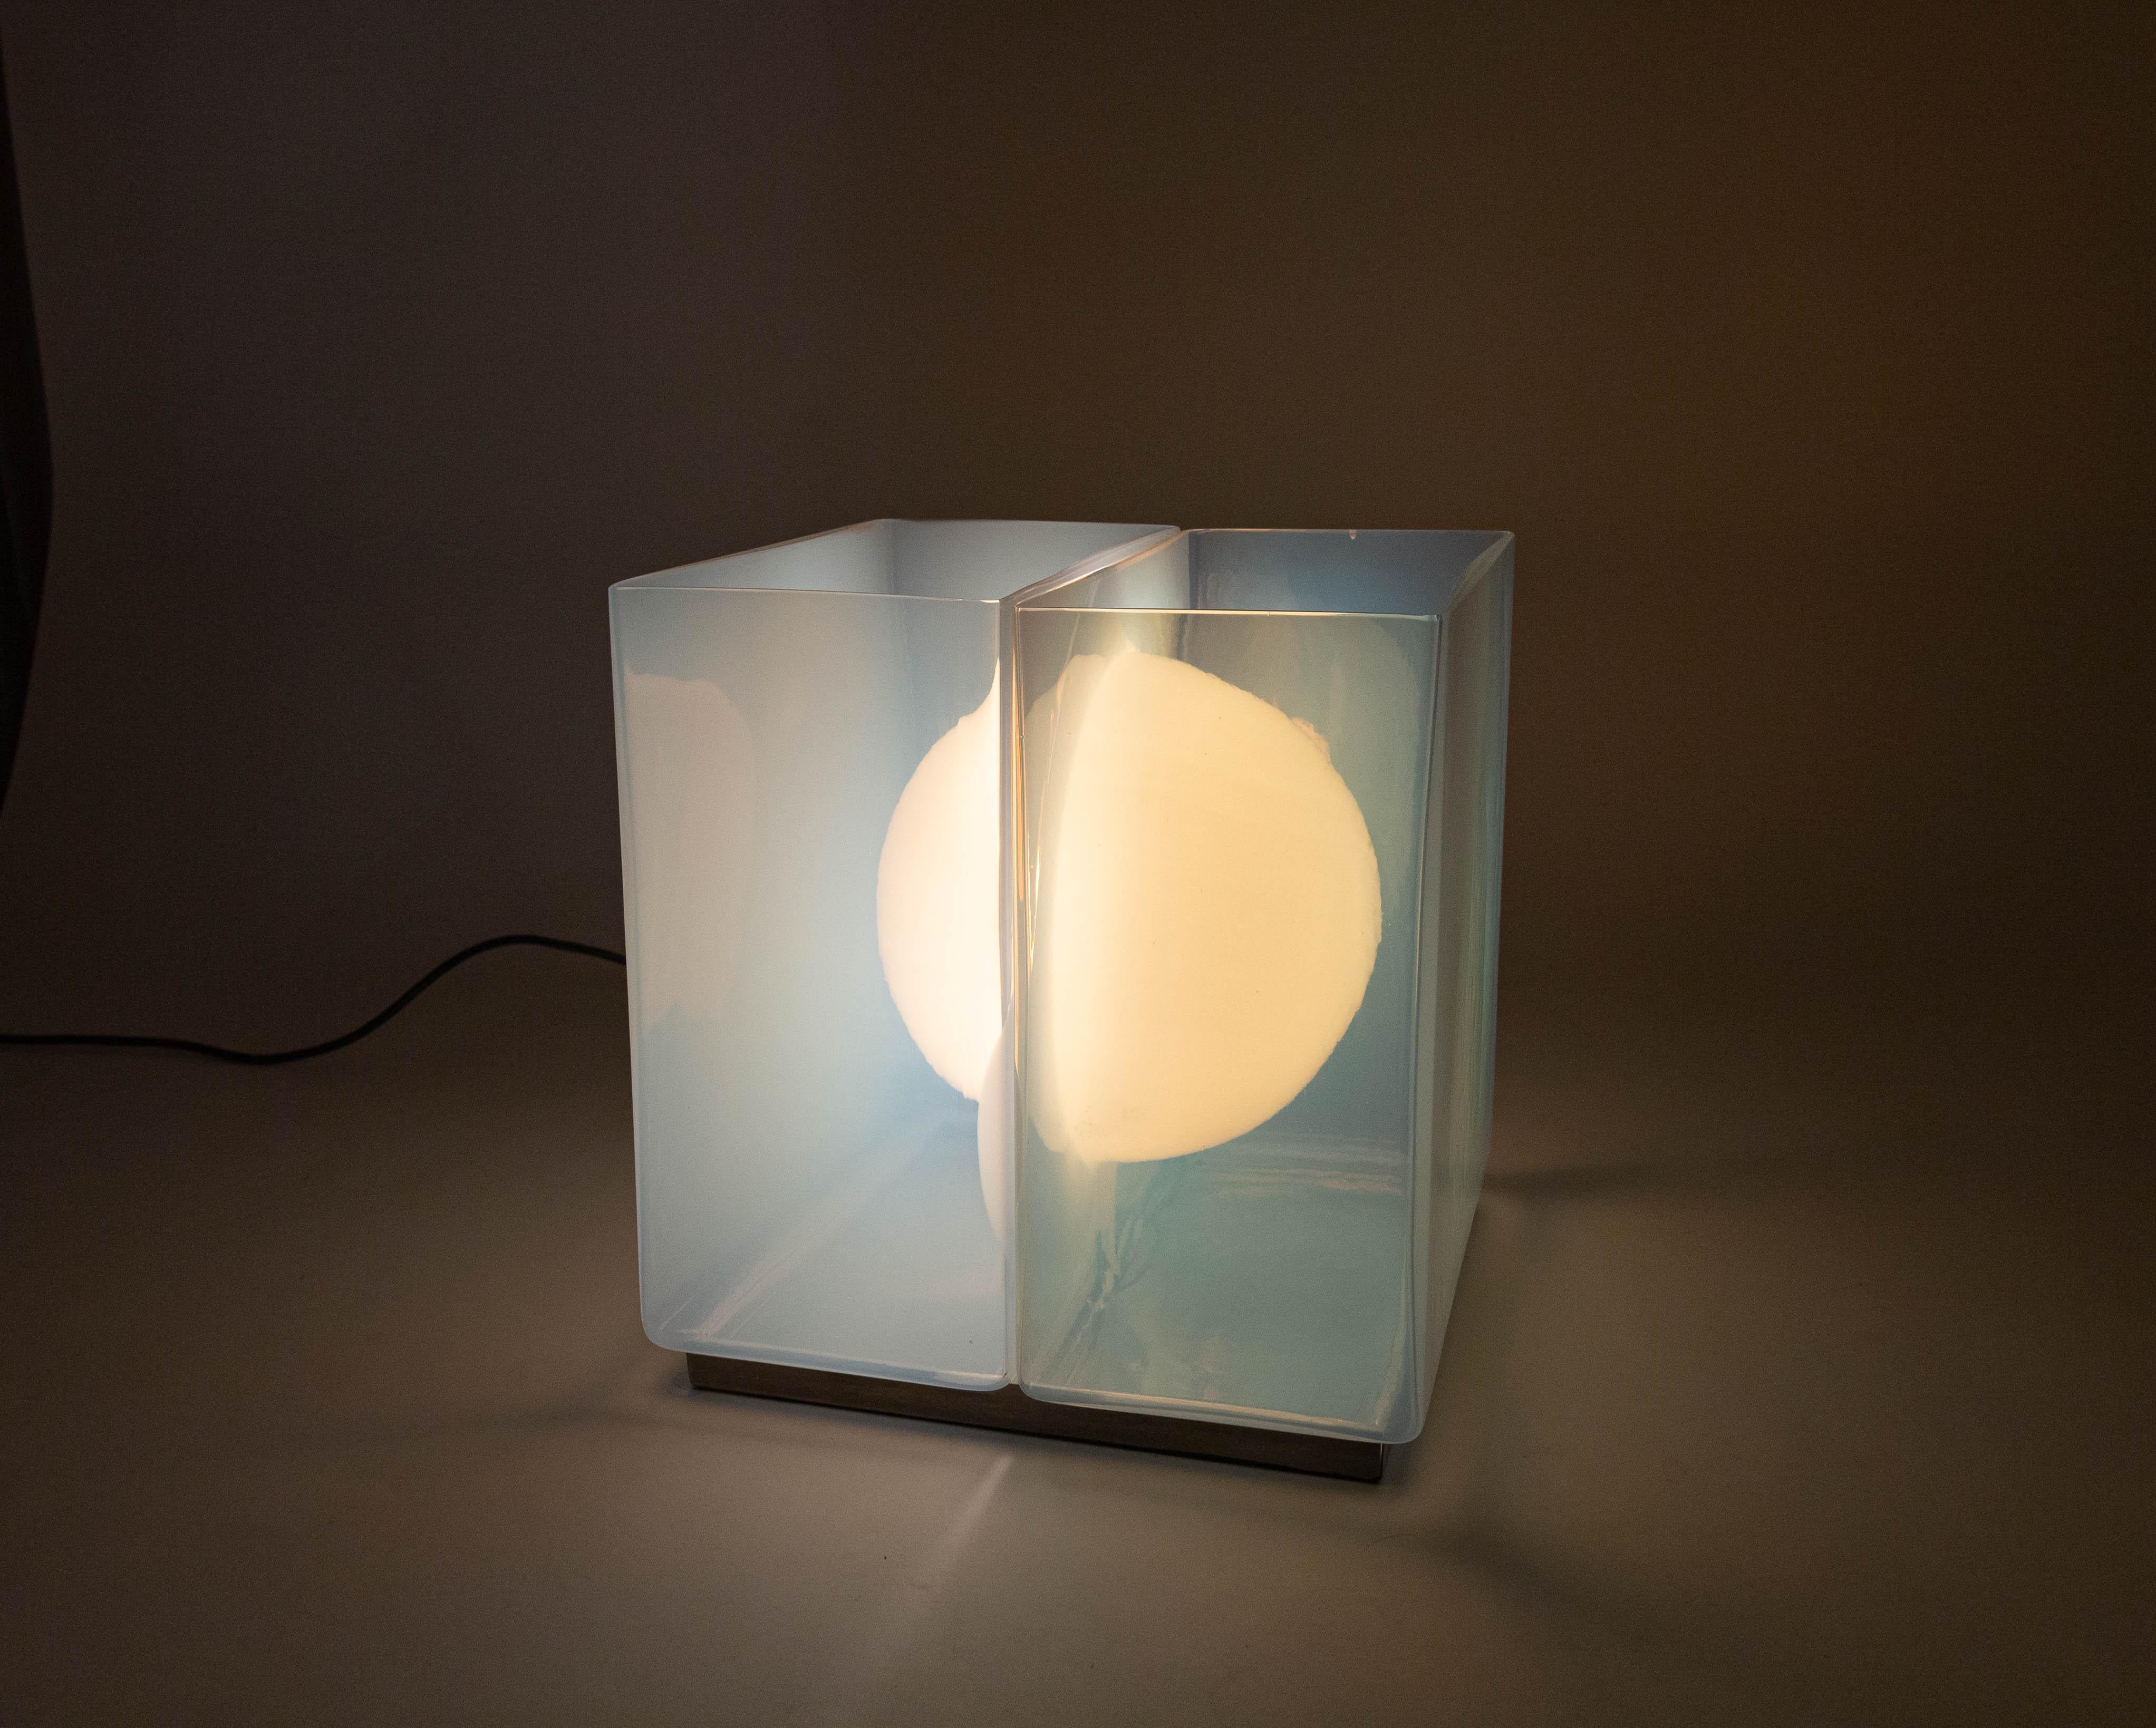 Modèle LT 323 Lampe de table conçue par Carlo Nason et fabriquée par A.V. Mazzega dans les années 1960.

Cet ingénieux objet soufflé à la main se compose de deux moitiés symétriques en verre opalin, d'une ampoule centrale et d'une base métallique